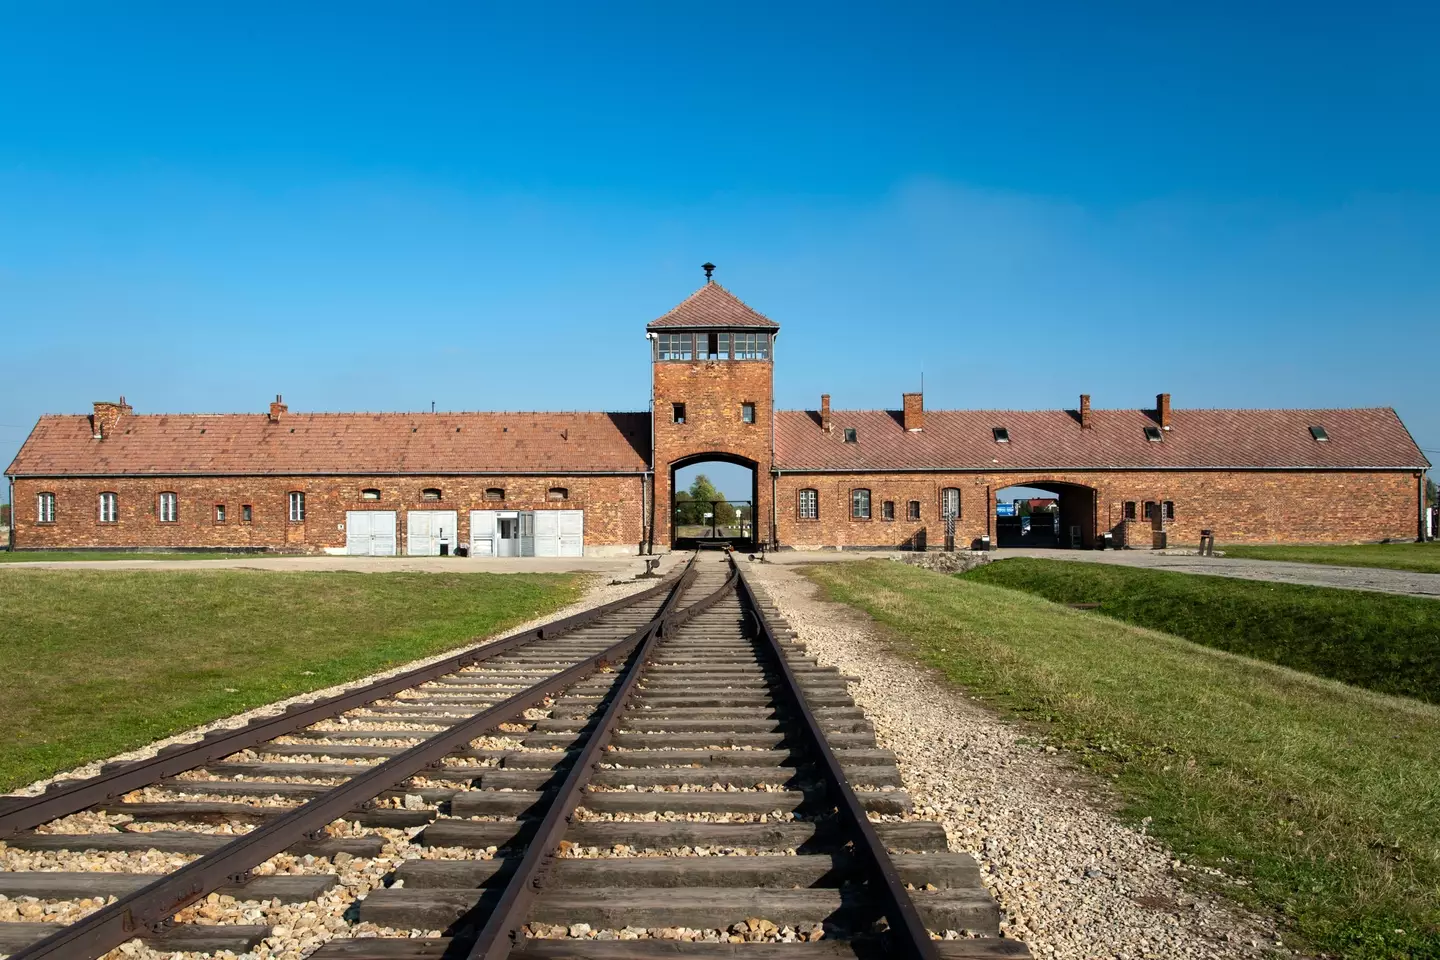 More than one million jewish men, women and children were brutally murdered at Auschwitz.